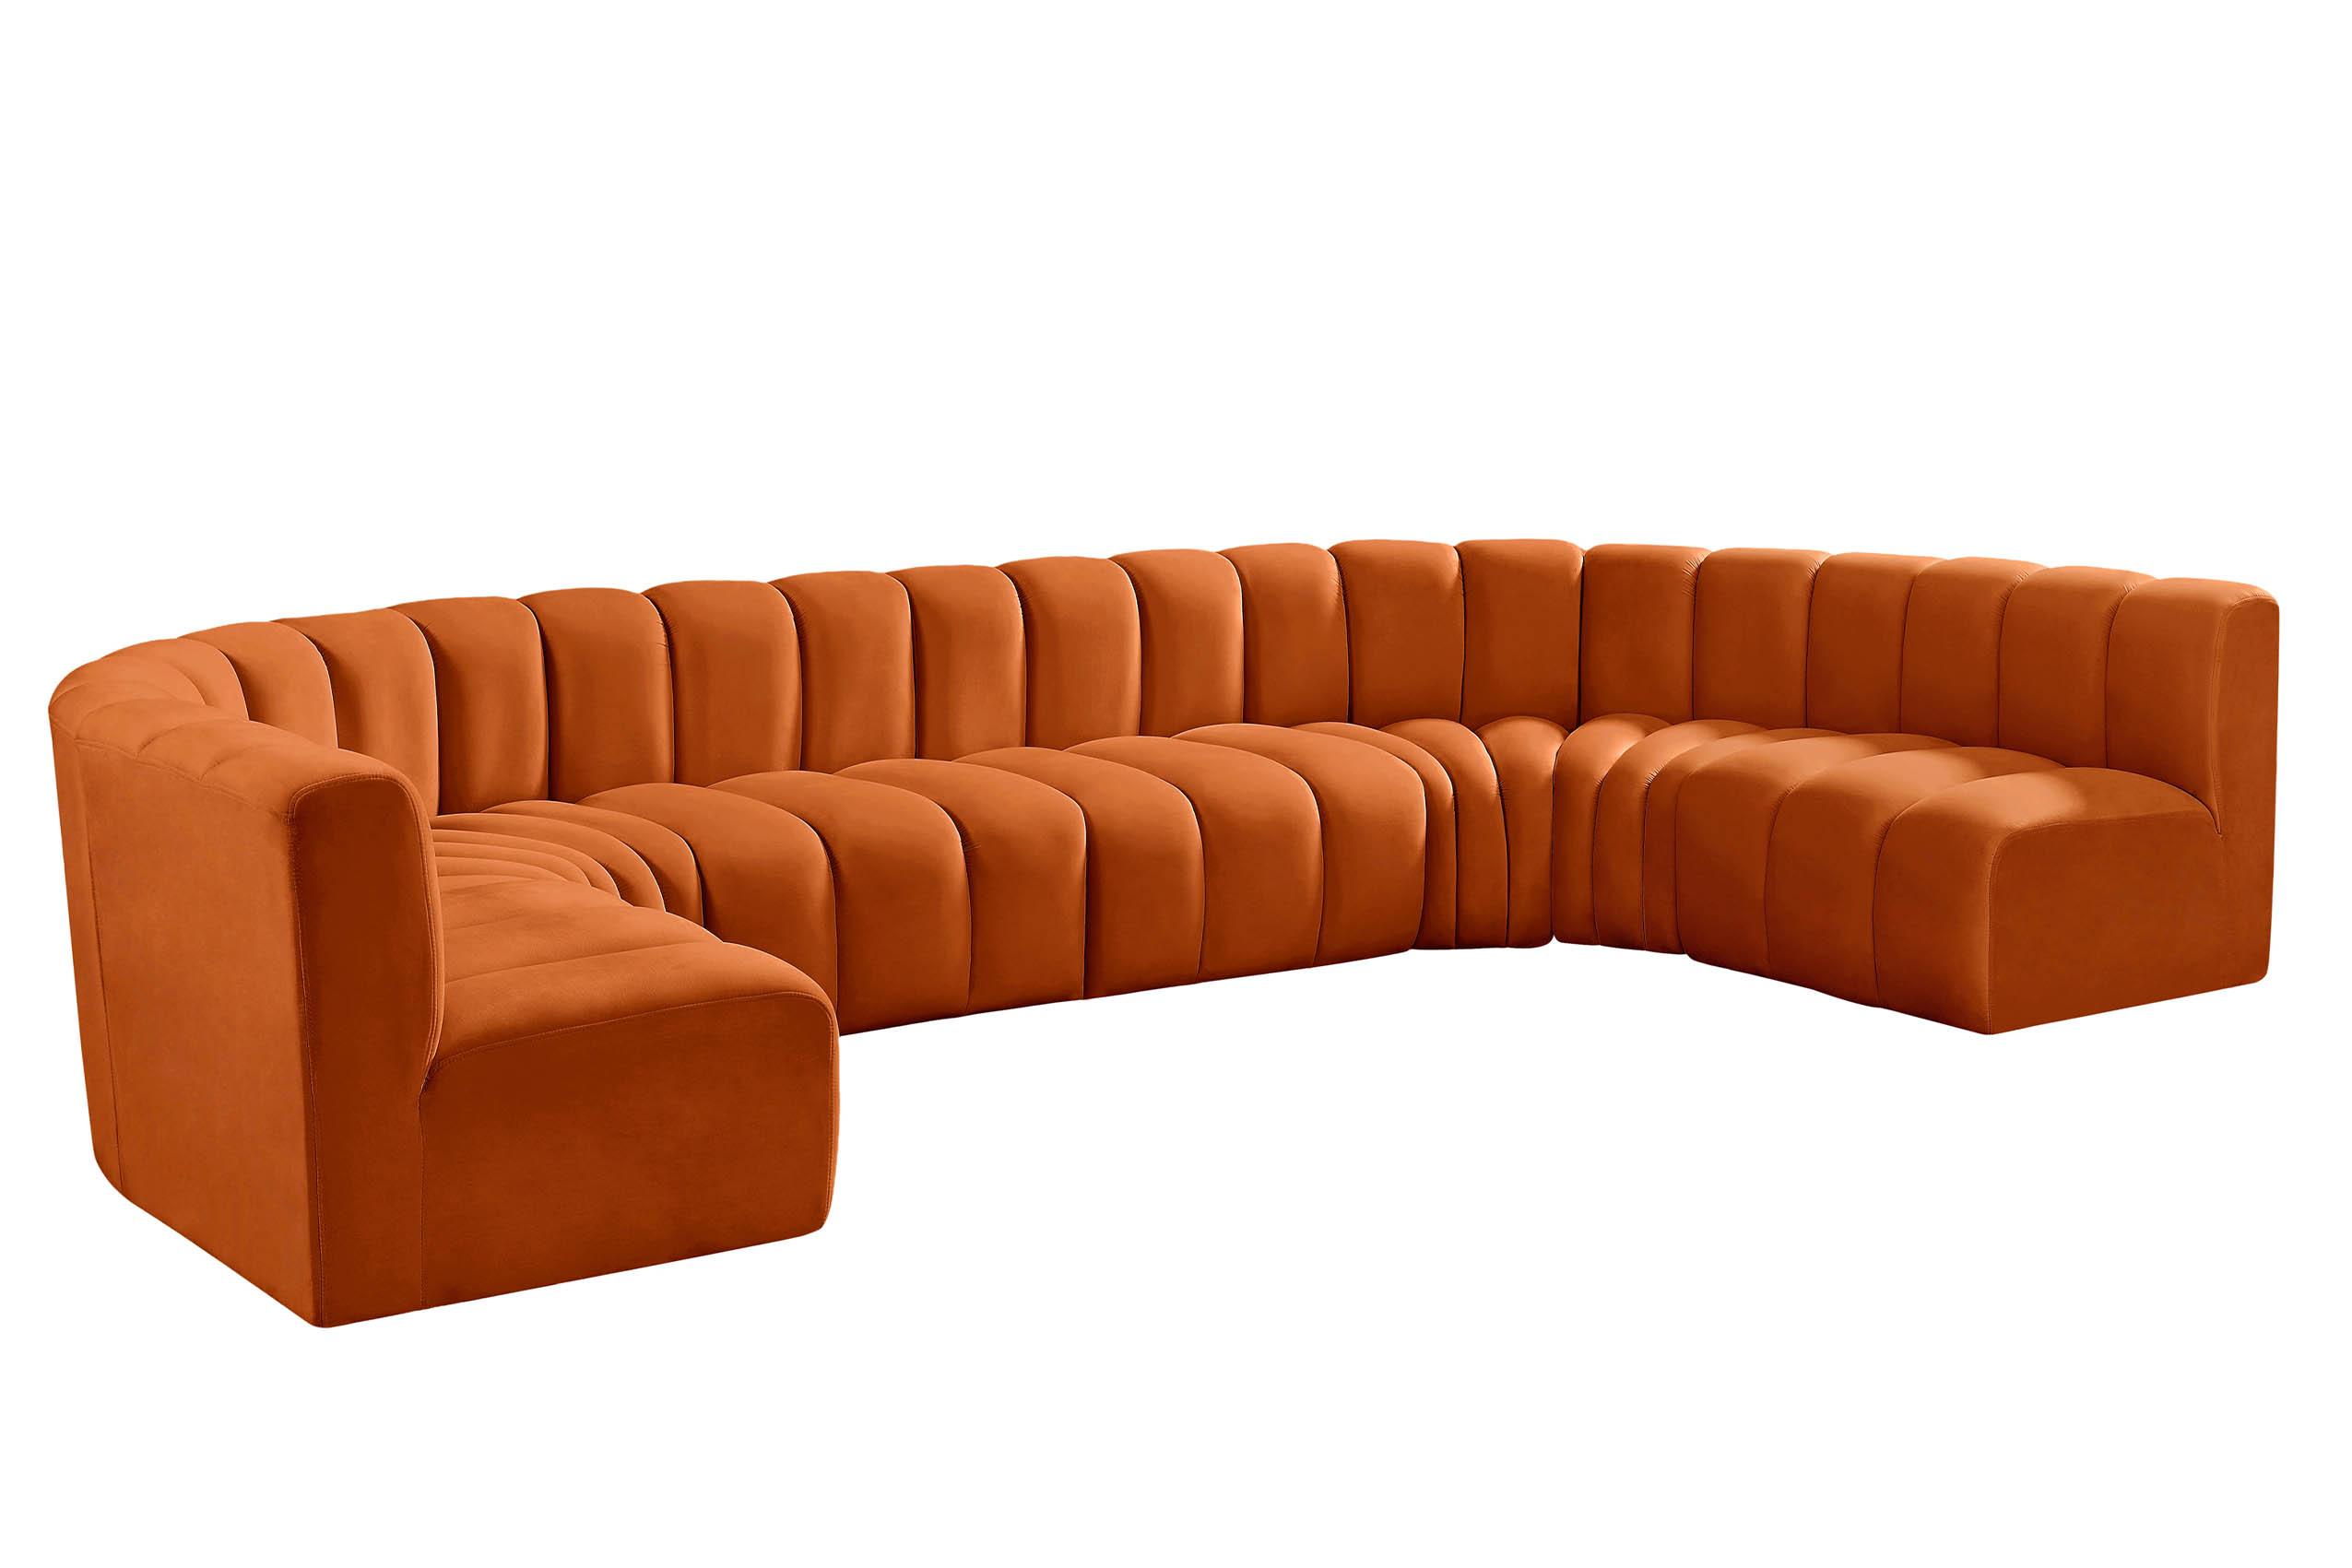 Contemporary, Modern Modular Sectional Sofa ARC 103Cognac-S8A 103Cognac-S8A in Cognac Velvet